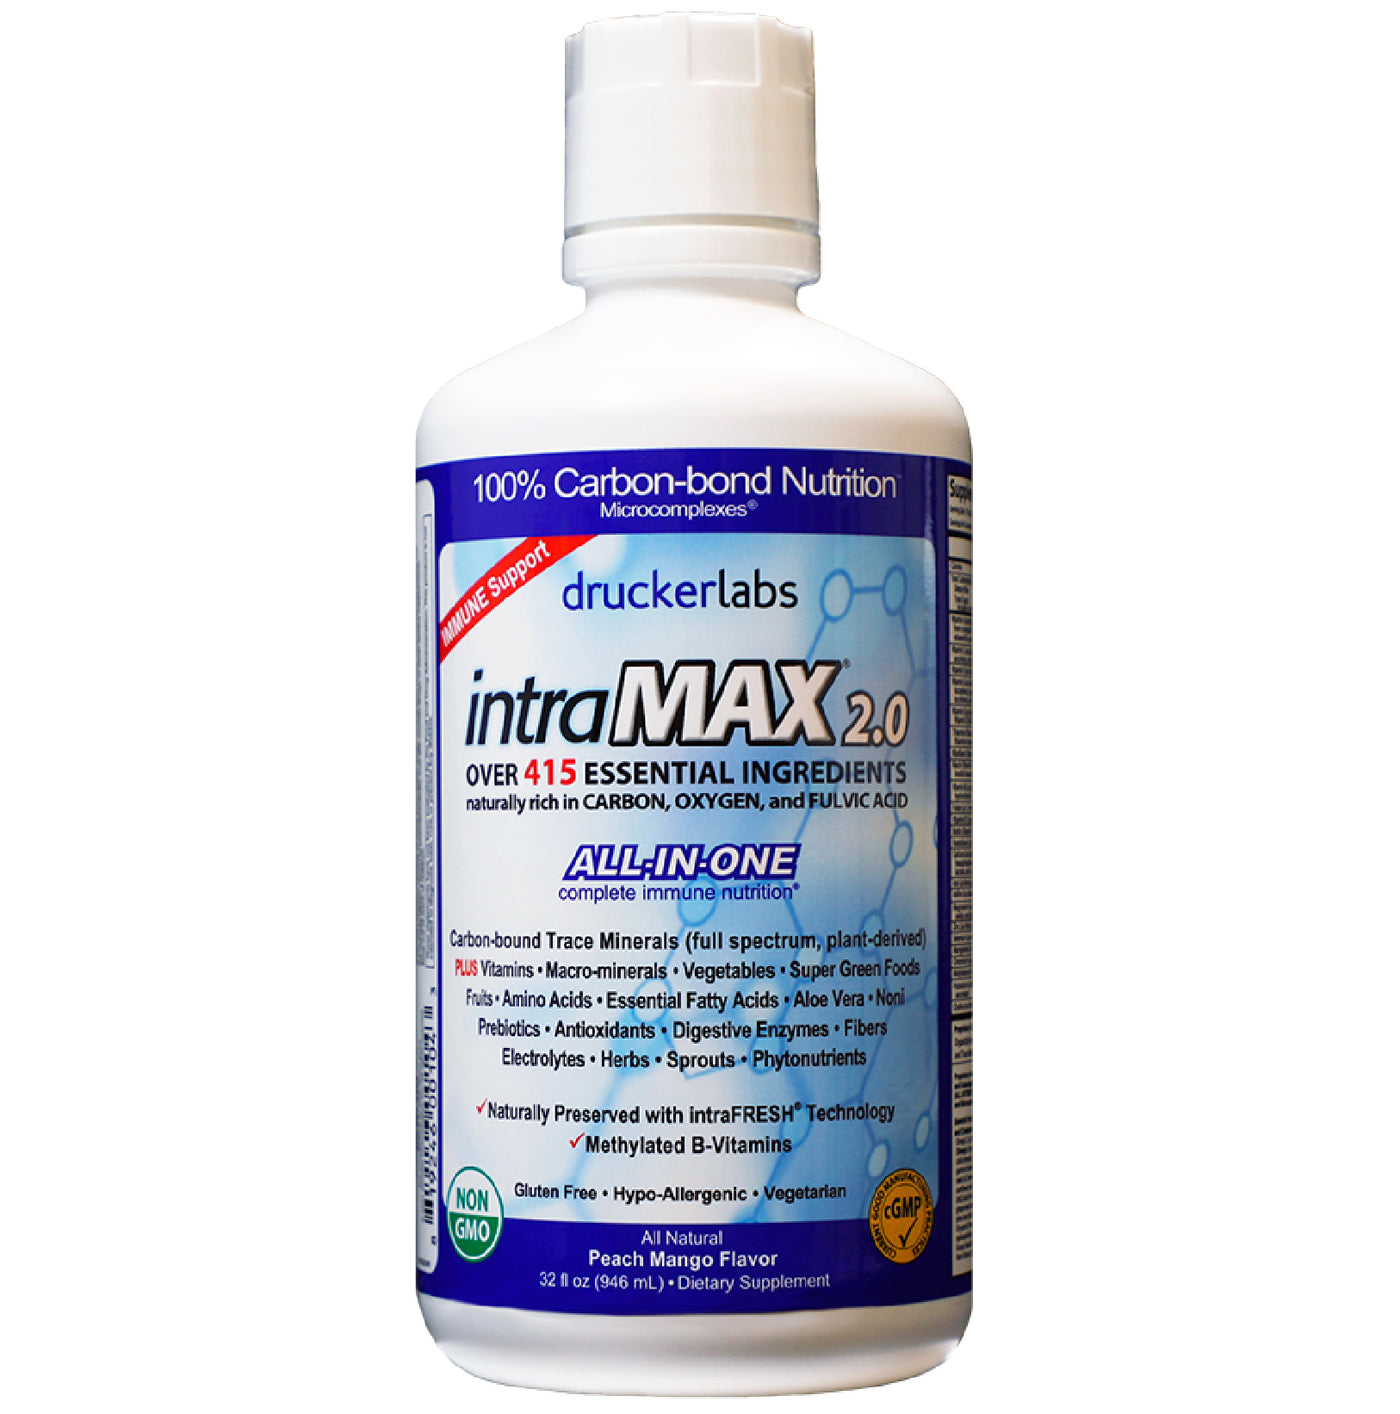 intraMAX 2.0 - the Convenient Liquid Vitamin Mix